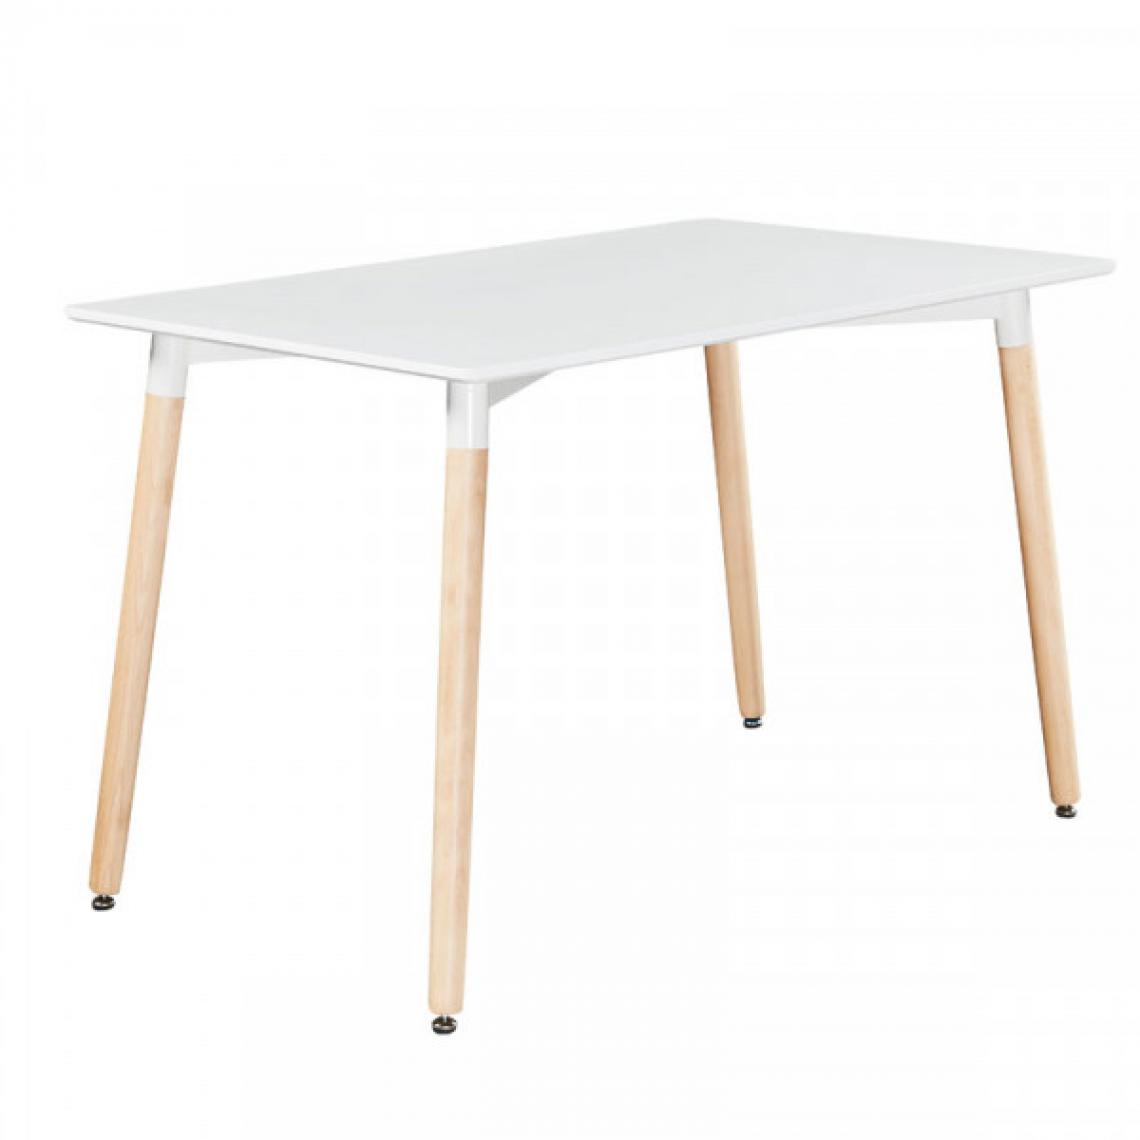 Dansmamaison - Table de repas rectangulaire 120 cm Blanc - OLAF - L 120 x l 80 x H 75 cm - Tables à manger